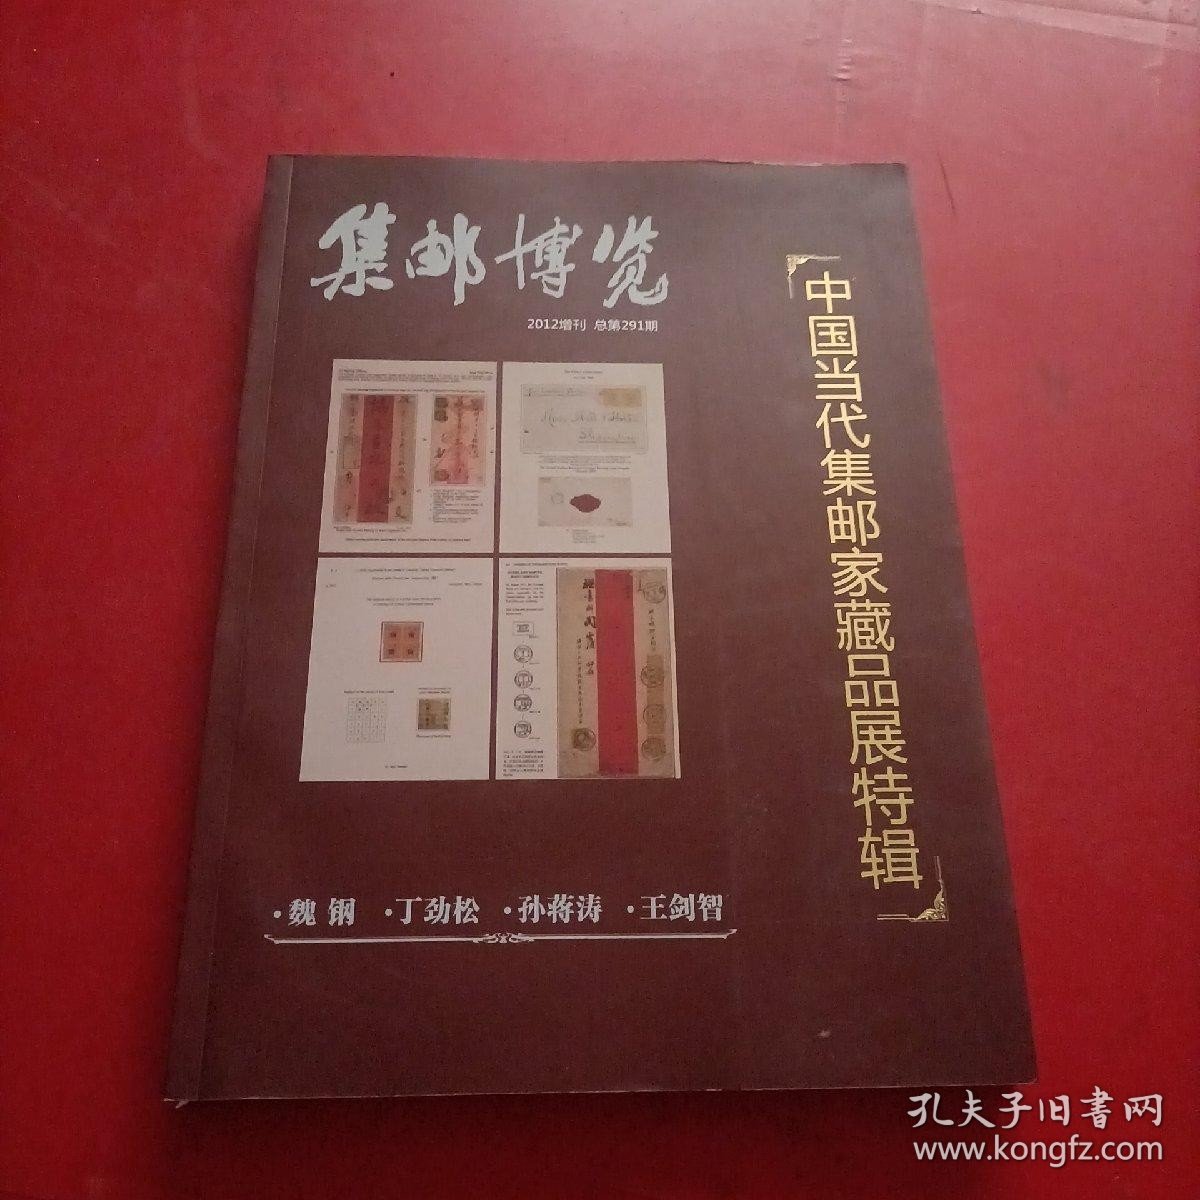 中国当代集邮家藏品展特辑 集邮博览2012增刊 总第291期